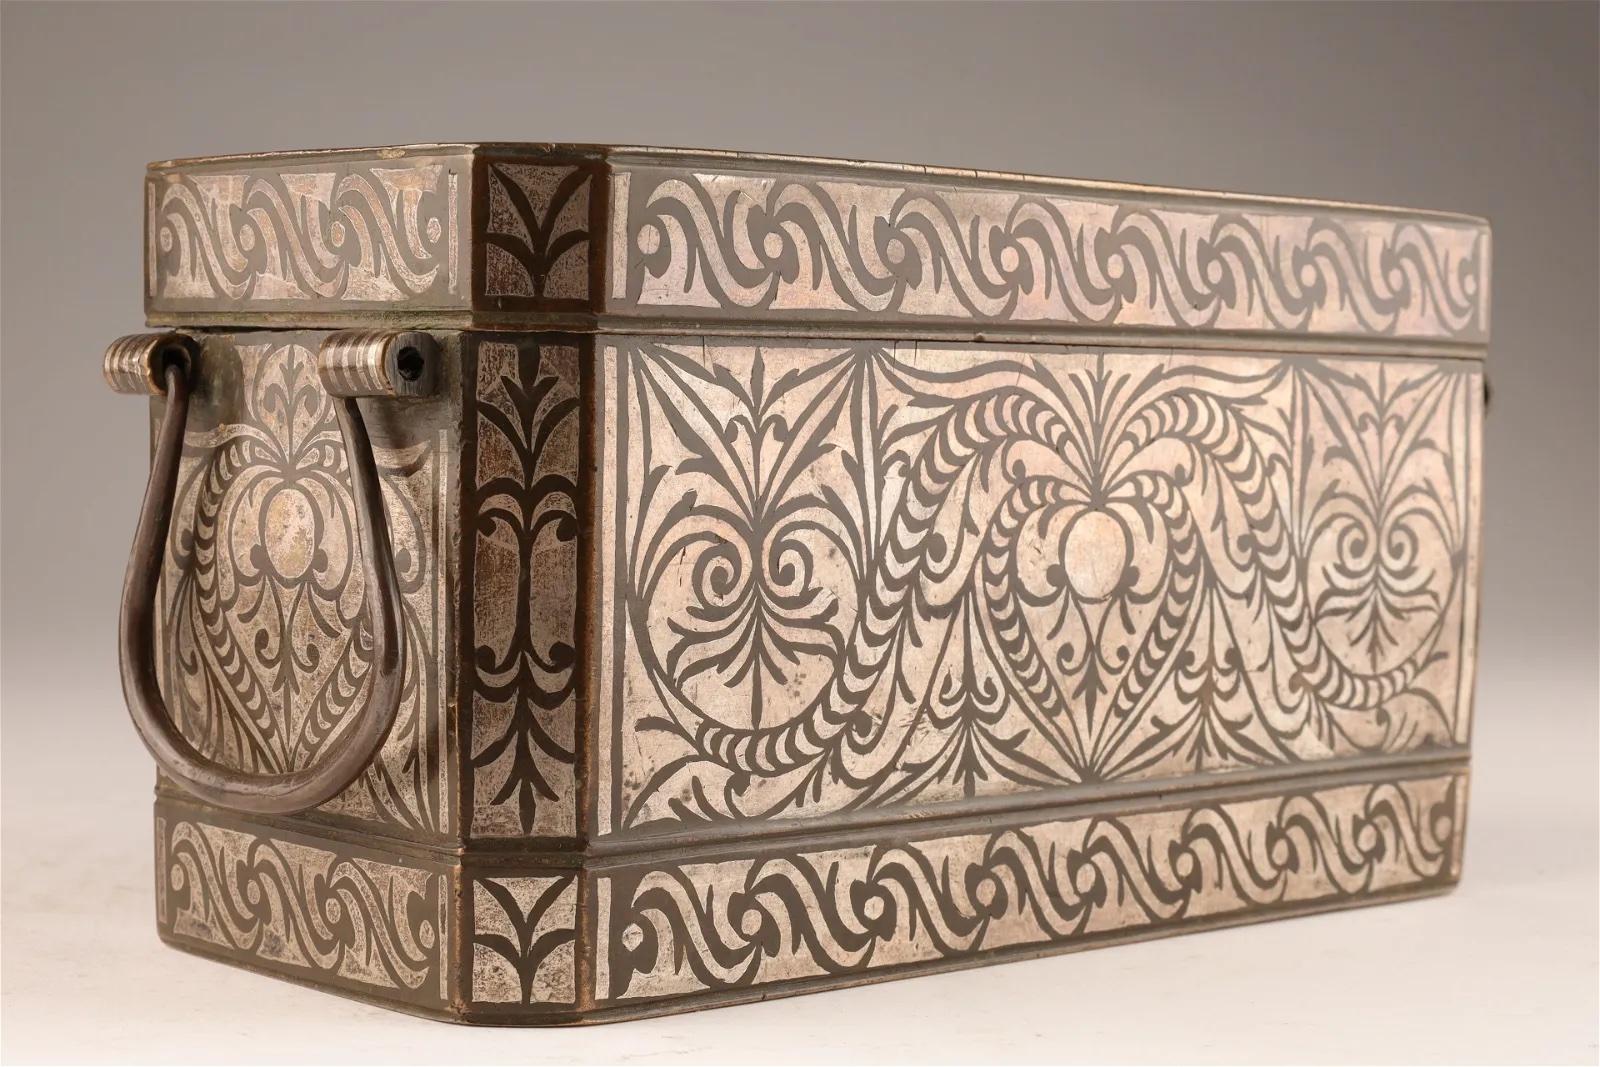 Il s'agit d'un bel exemple de boîte à noix betal rectangulaire en bronze du début du 20e siècle, avec de belles incrustations d'argent élaborées, provenant de Mindanao aux Philippines. La boîte est munie d'une poignée de chaque côté et comporte